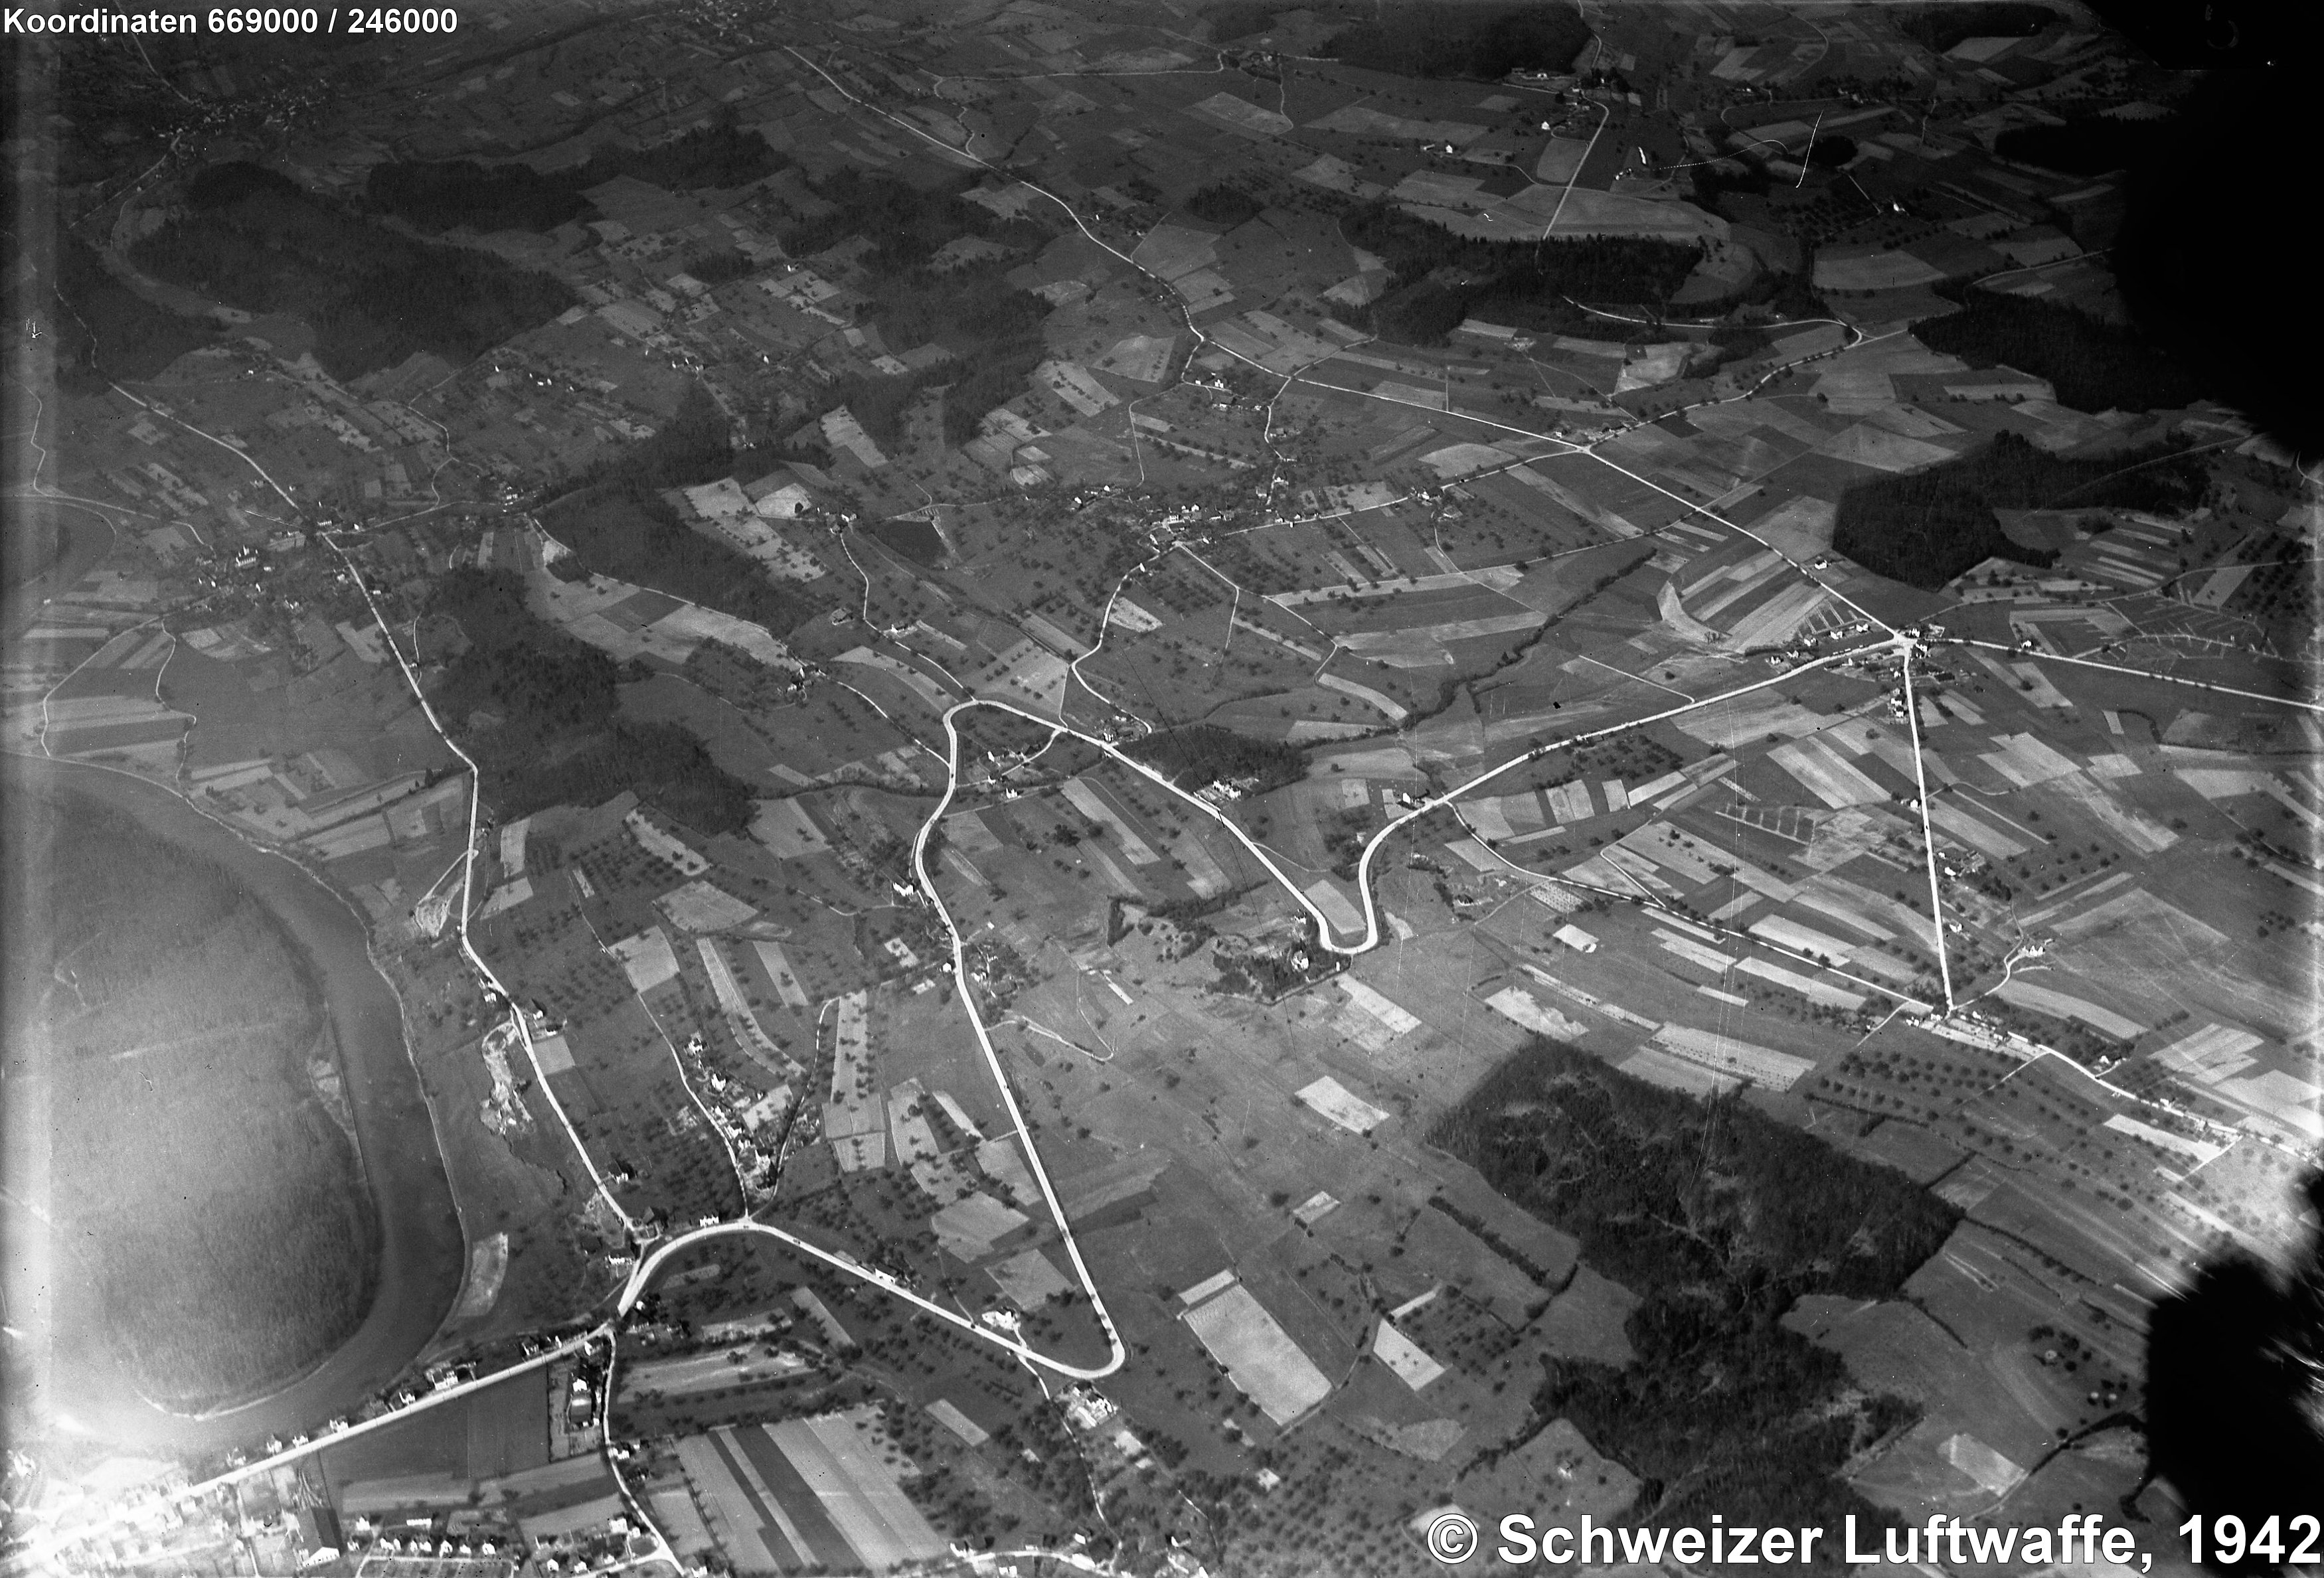 Mutschellen-Passstrasse (1942); Mutschellen-Passhöhe: Bildmitte rechts. Bremgarten ausserhalb der linken Bildecke.